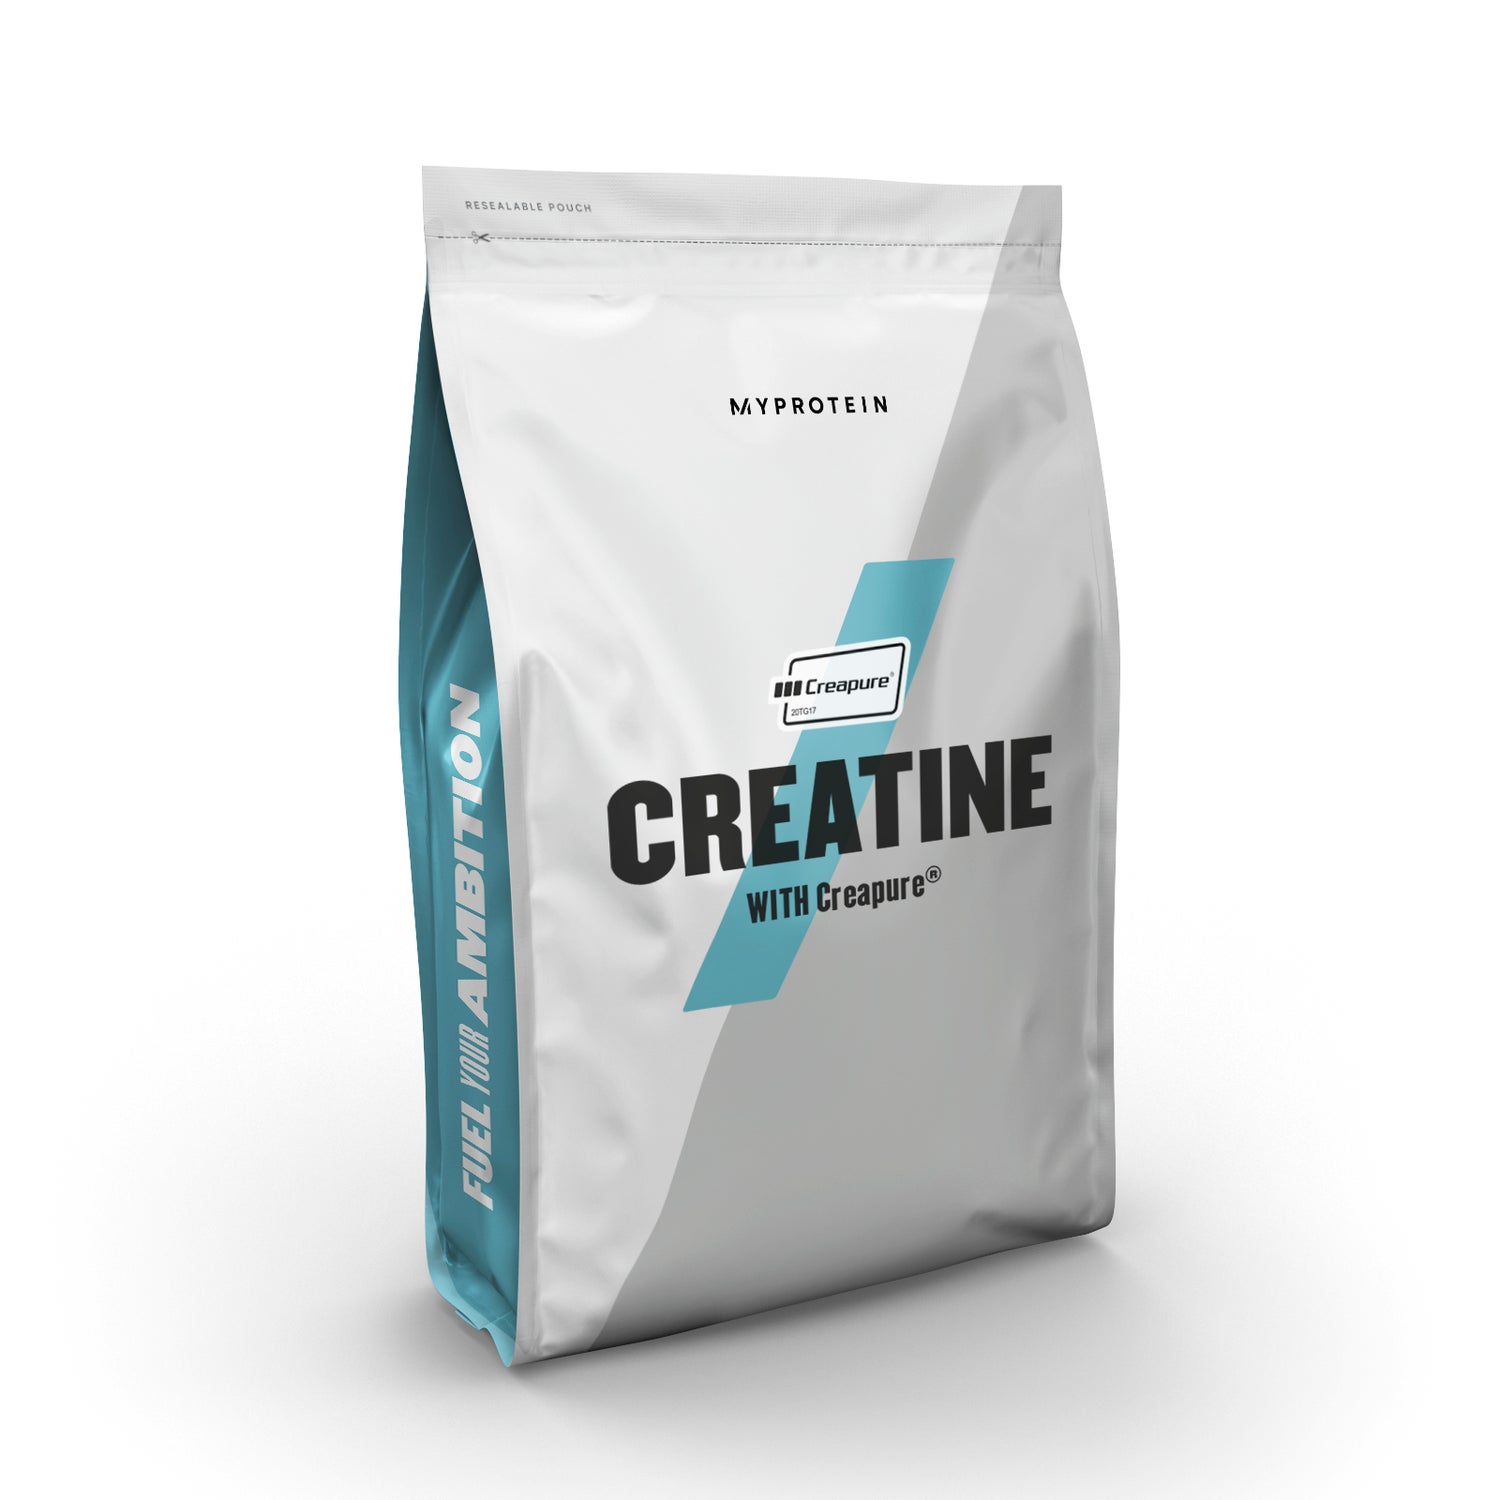 Κρεατίνη Creapure® - 250g - Χωρίς Γεύση